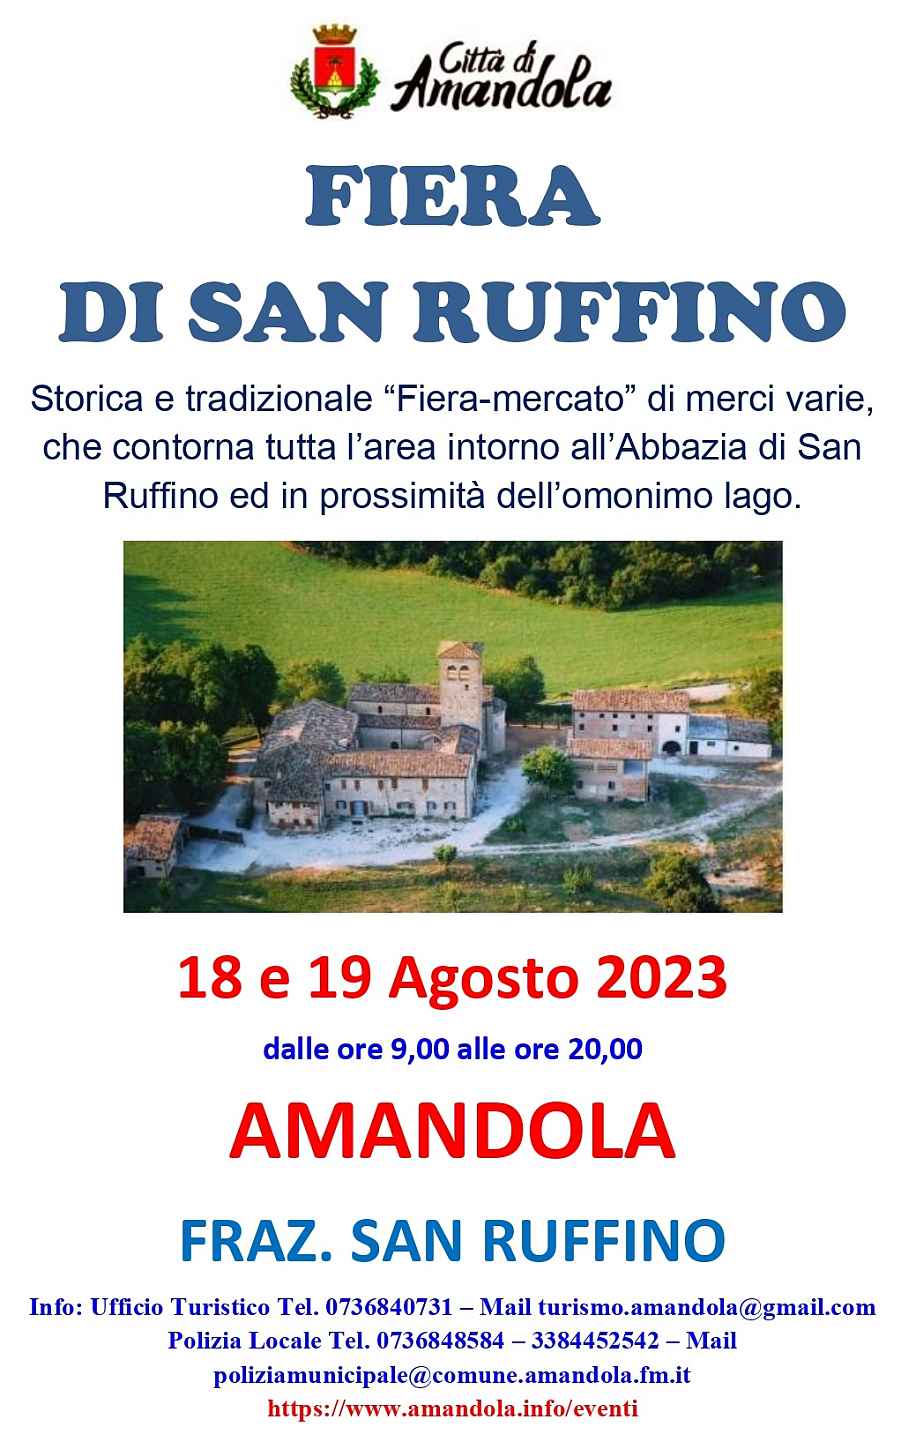 Amandola (FM)
"Fiera di San Ruffino" 
18-19 Agosto 2023